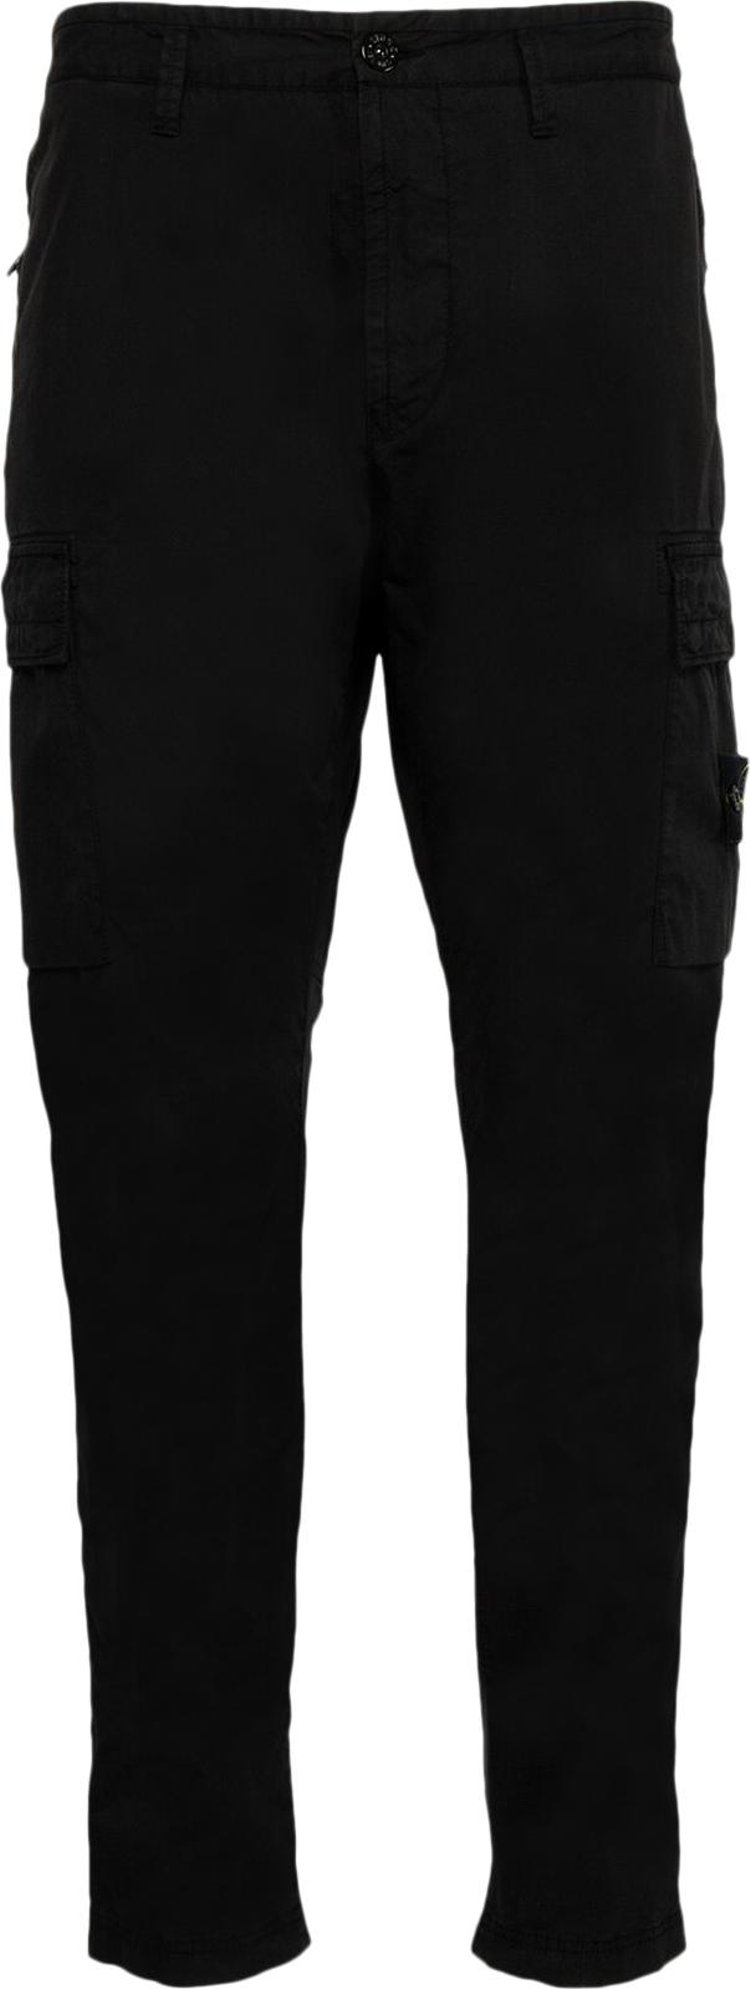 Buy Stone Island Stretch Cargo Pants 'Black' - 791532710 V0029 | GOAT